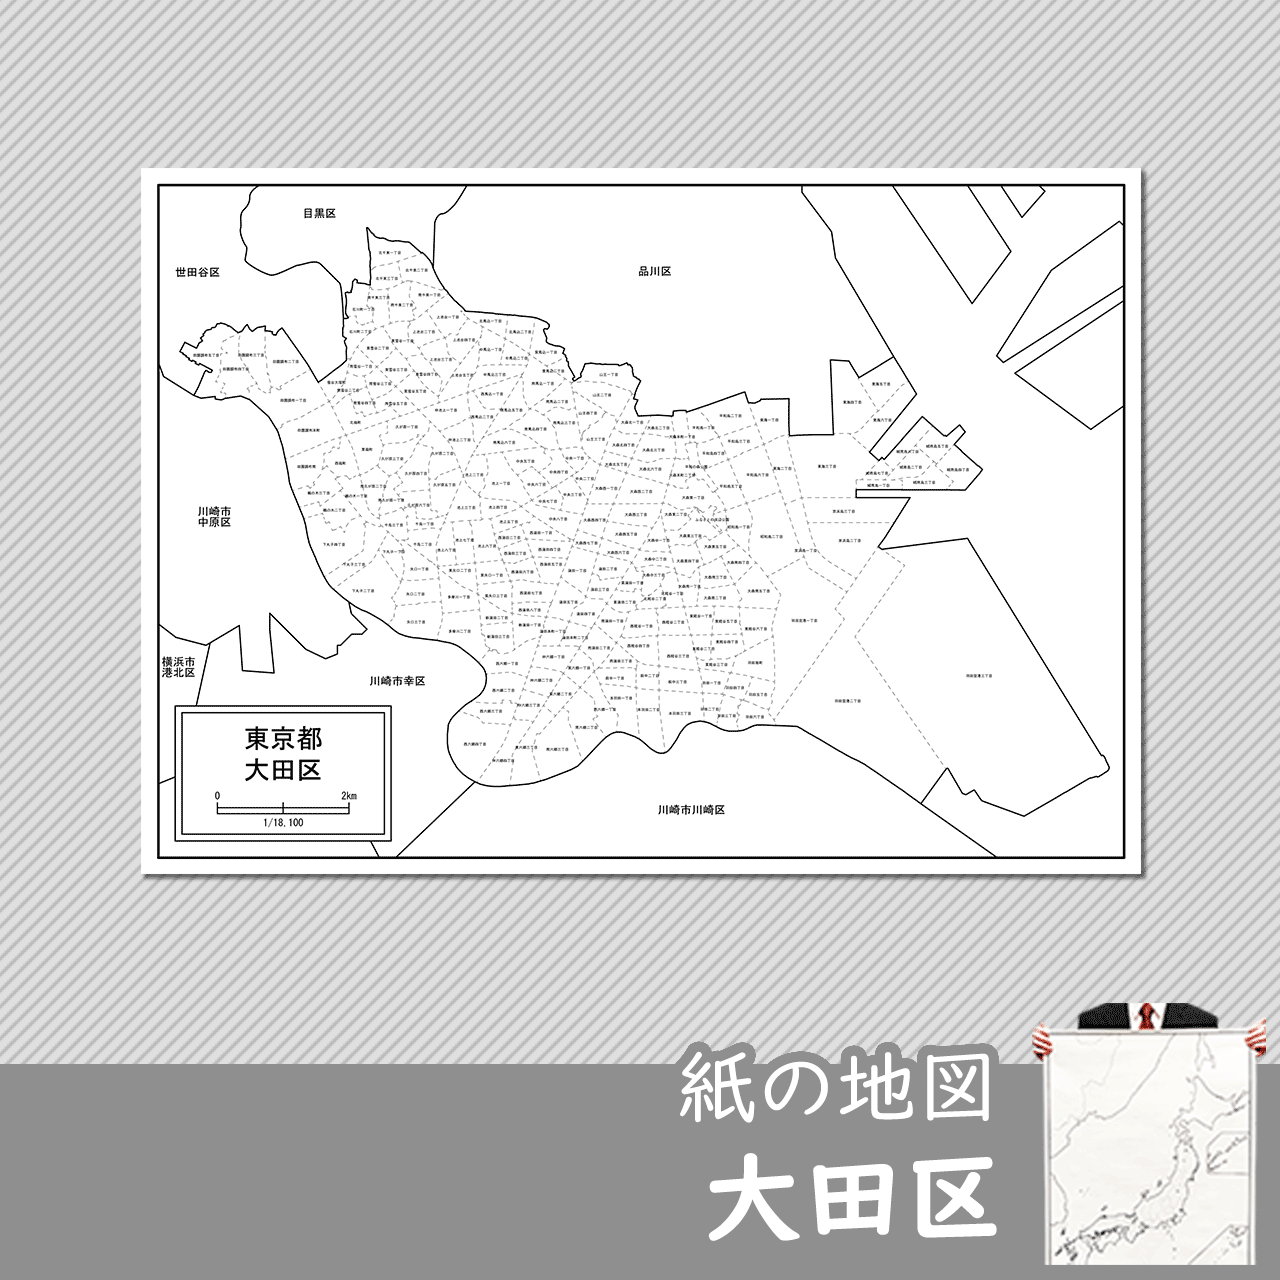 東京都大田区の紙の白地図のサムネイル